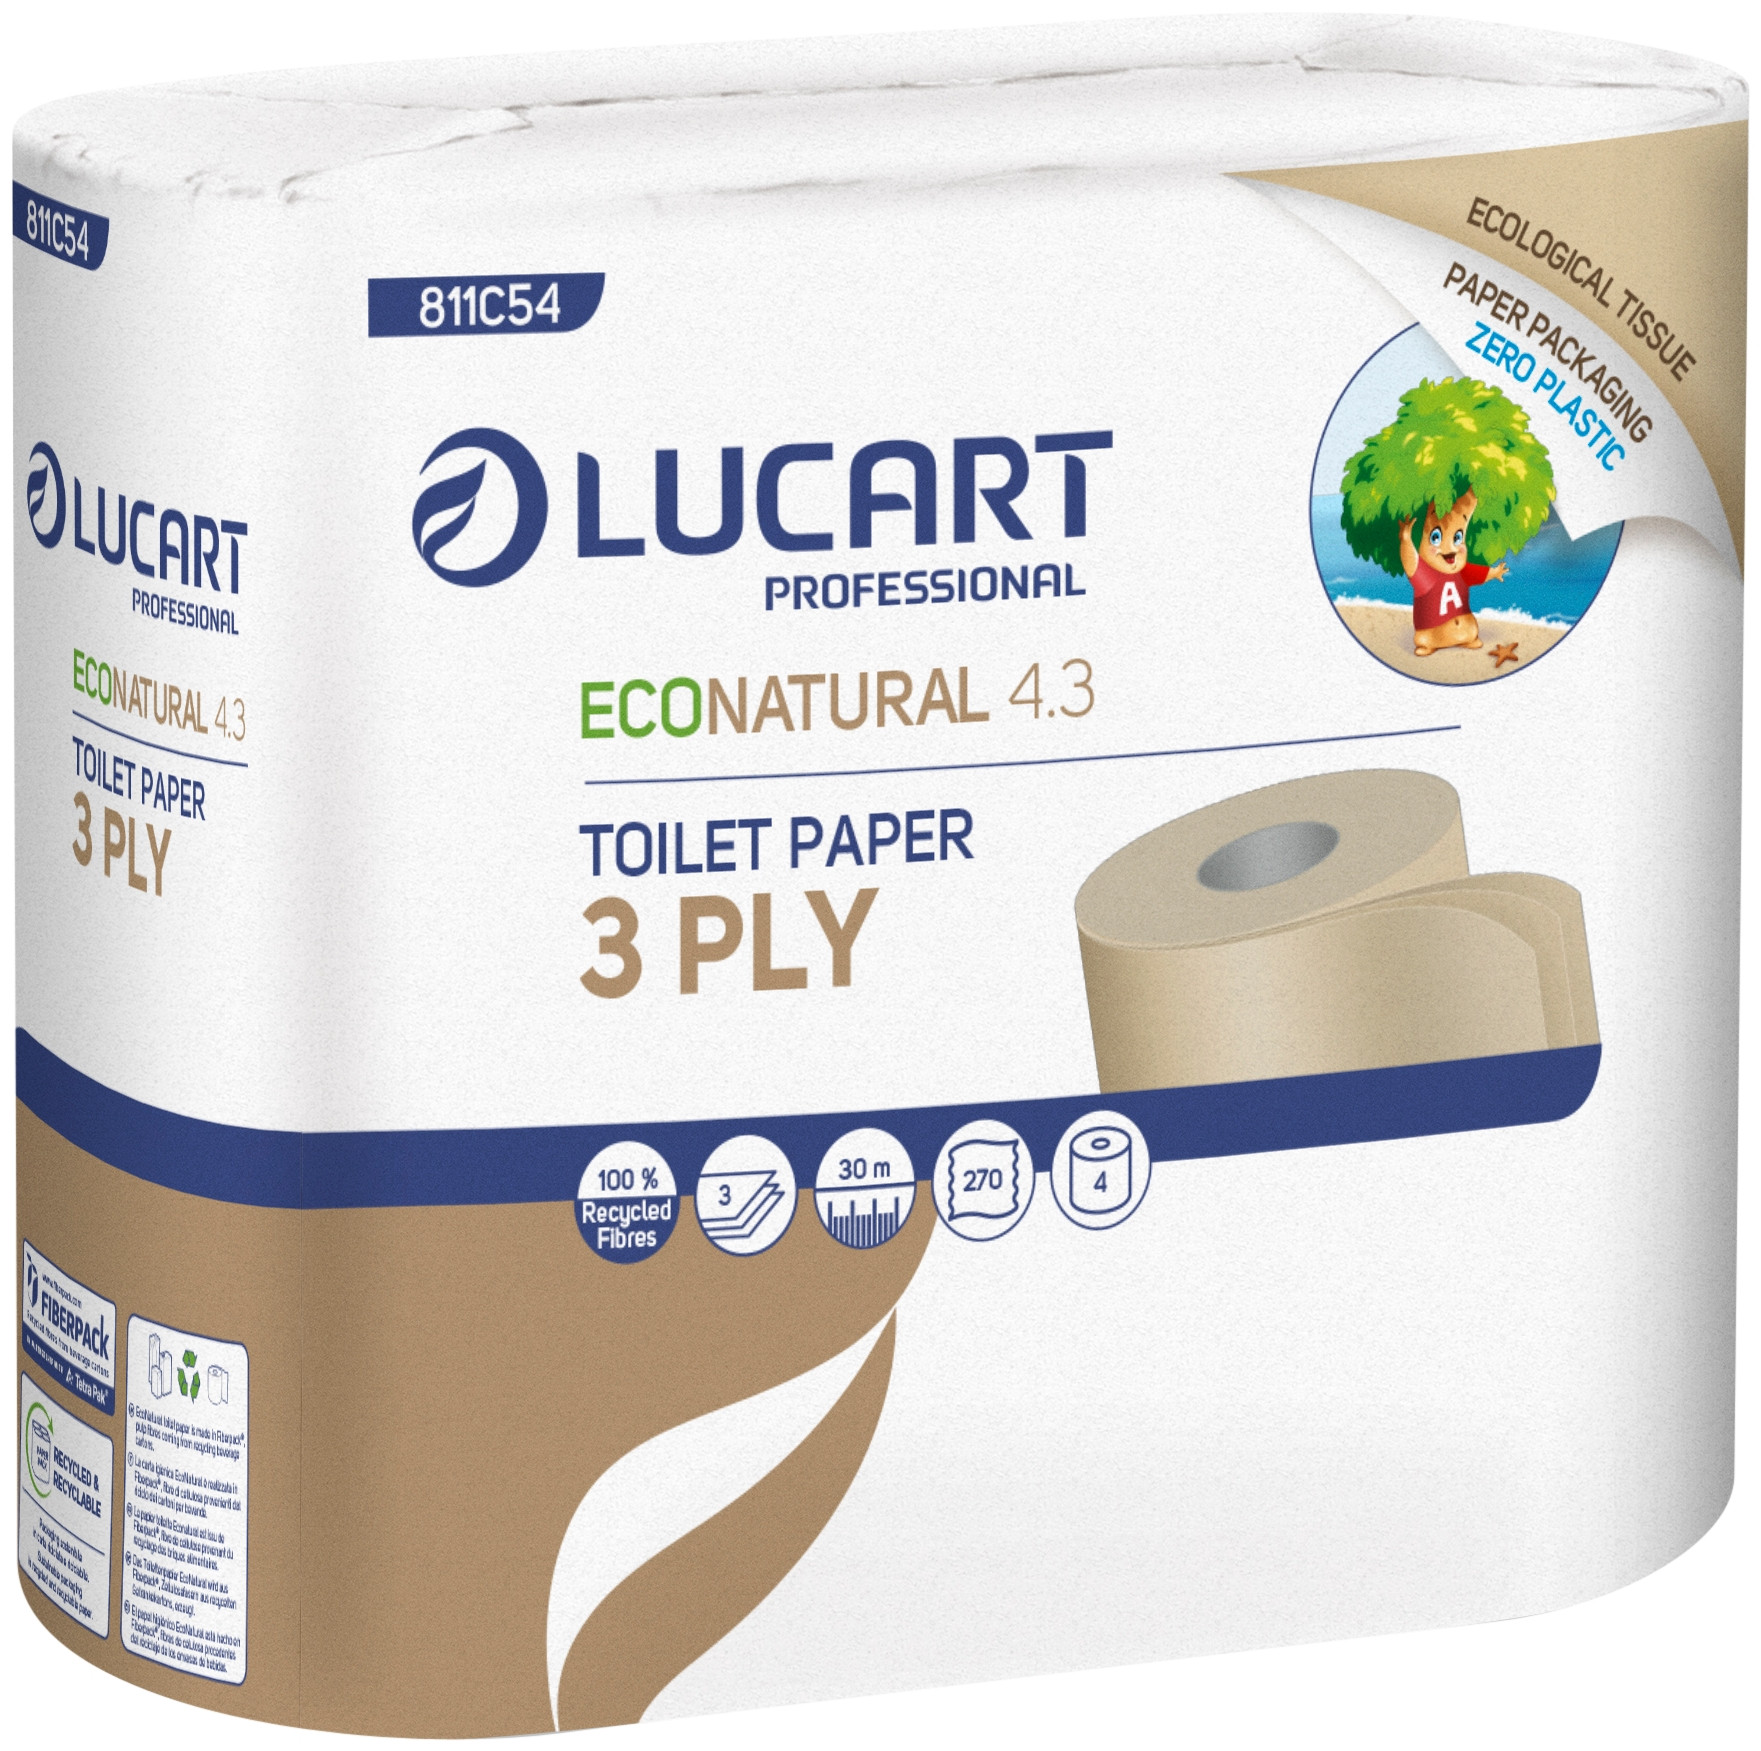 LUCART Toiletpapir T3 EcoNatural 3-lag P 30 m 56 rl (811C54)